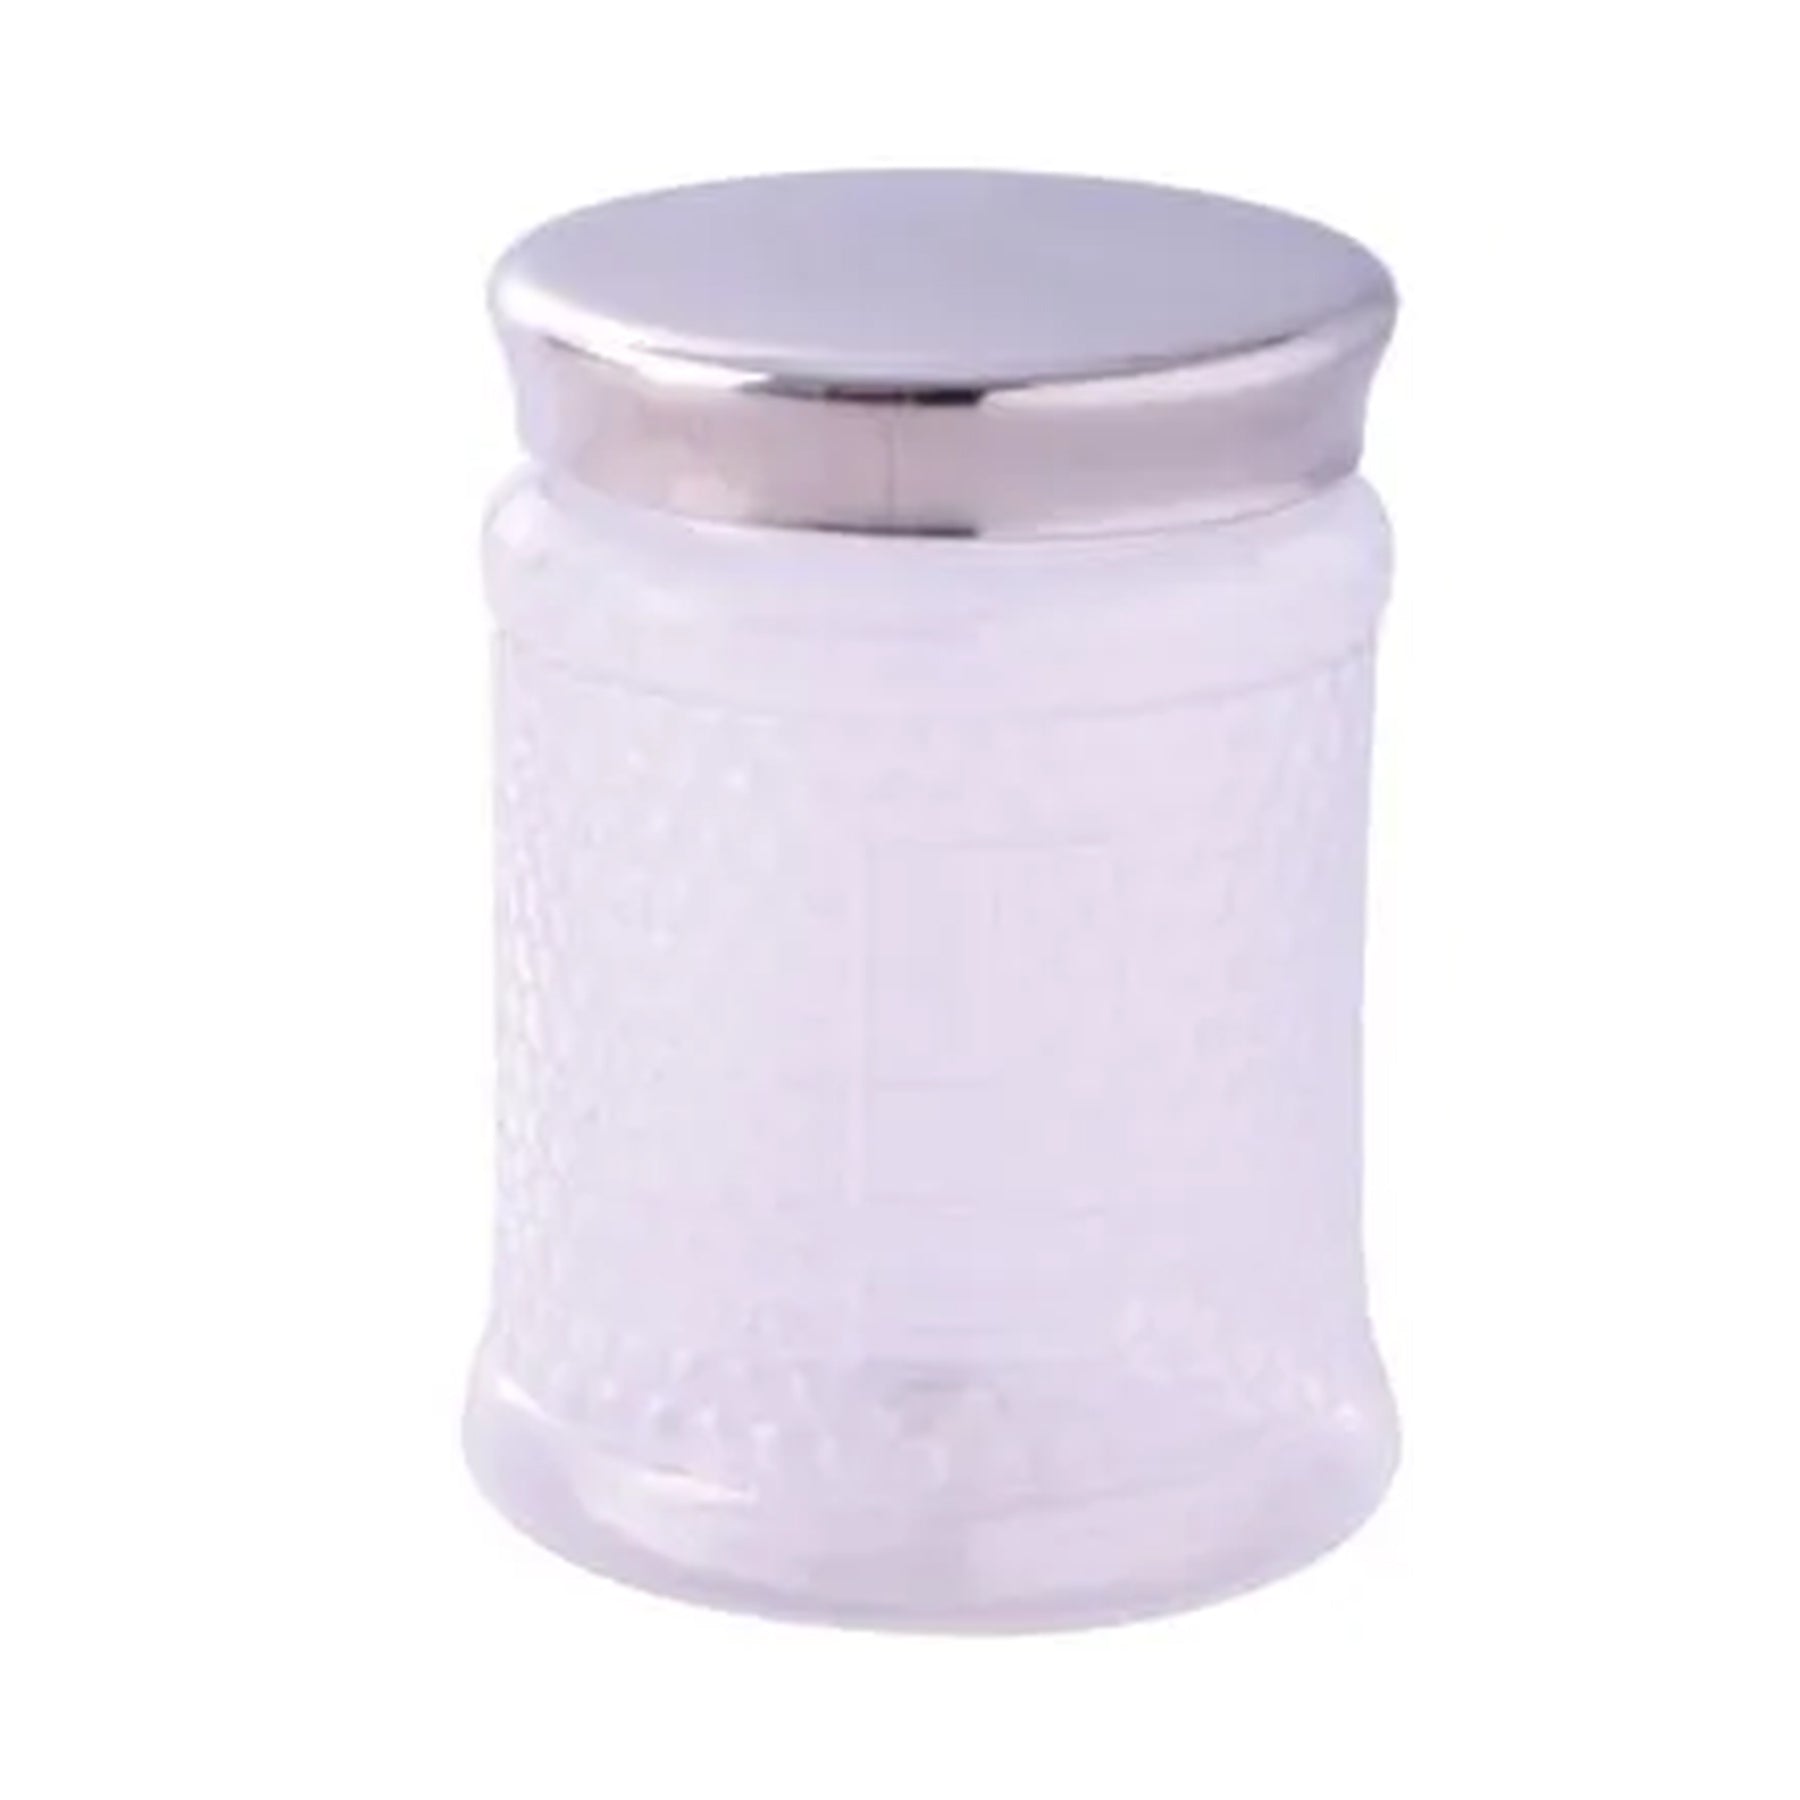 Crystal plastic jar